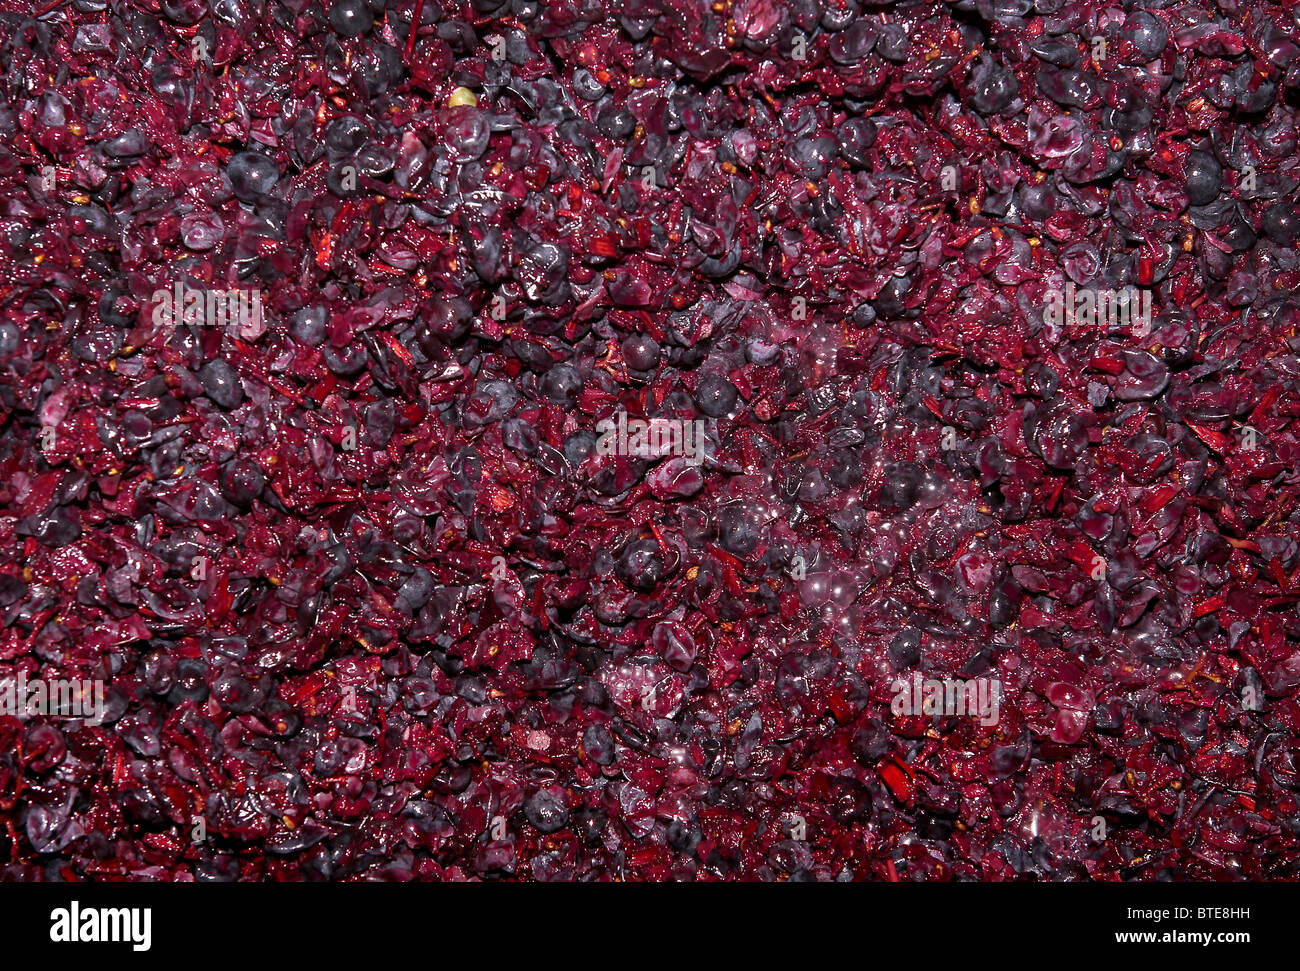 Vin rouge le raisin, de la Garnache variété, dans une cuve de fermentation dans une cave en Espagne Banque D'Images